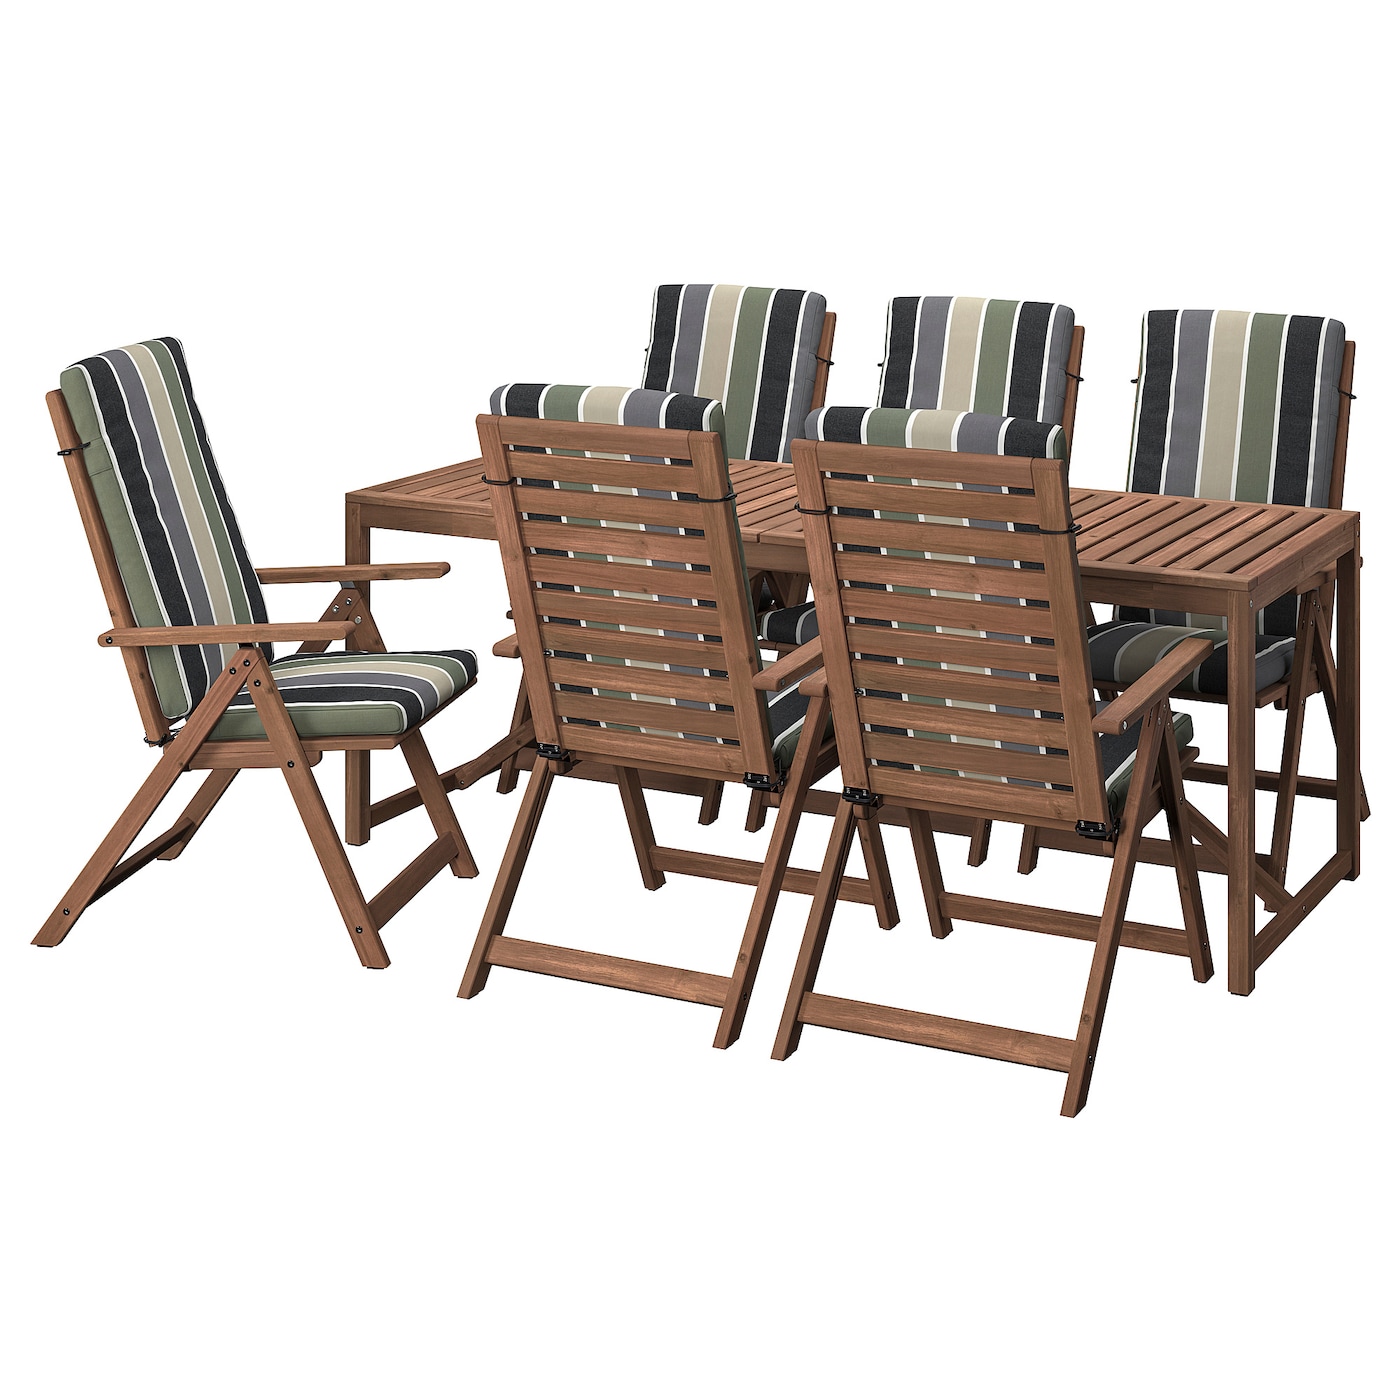 Стол + 6 стула -NÄMMARÖ / NАMMARО IKEA/  НАММАРО ИКЕА, 200х75 см, коричневый/цветный